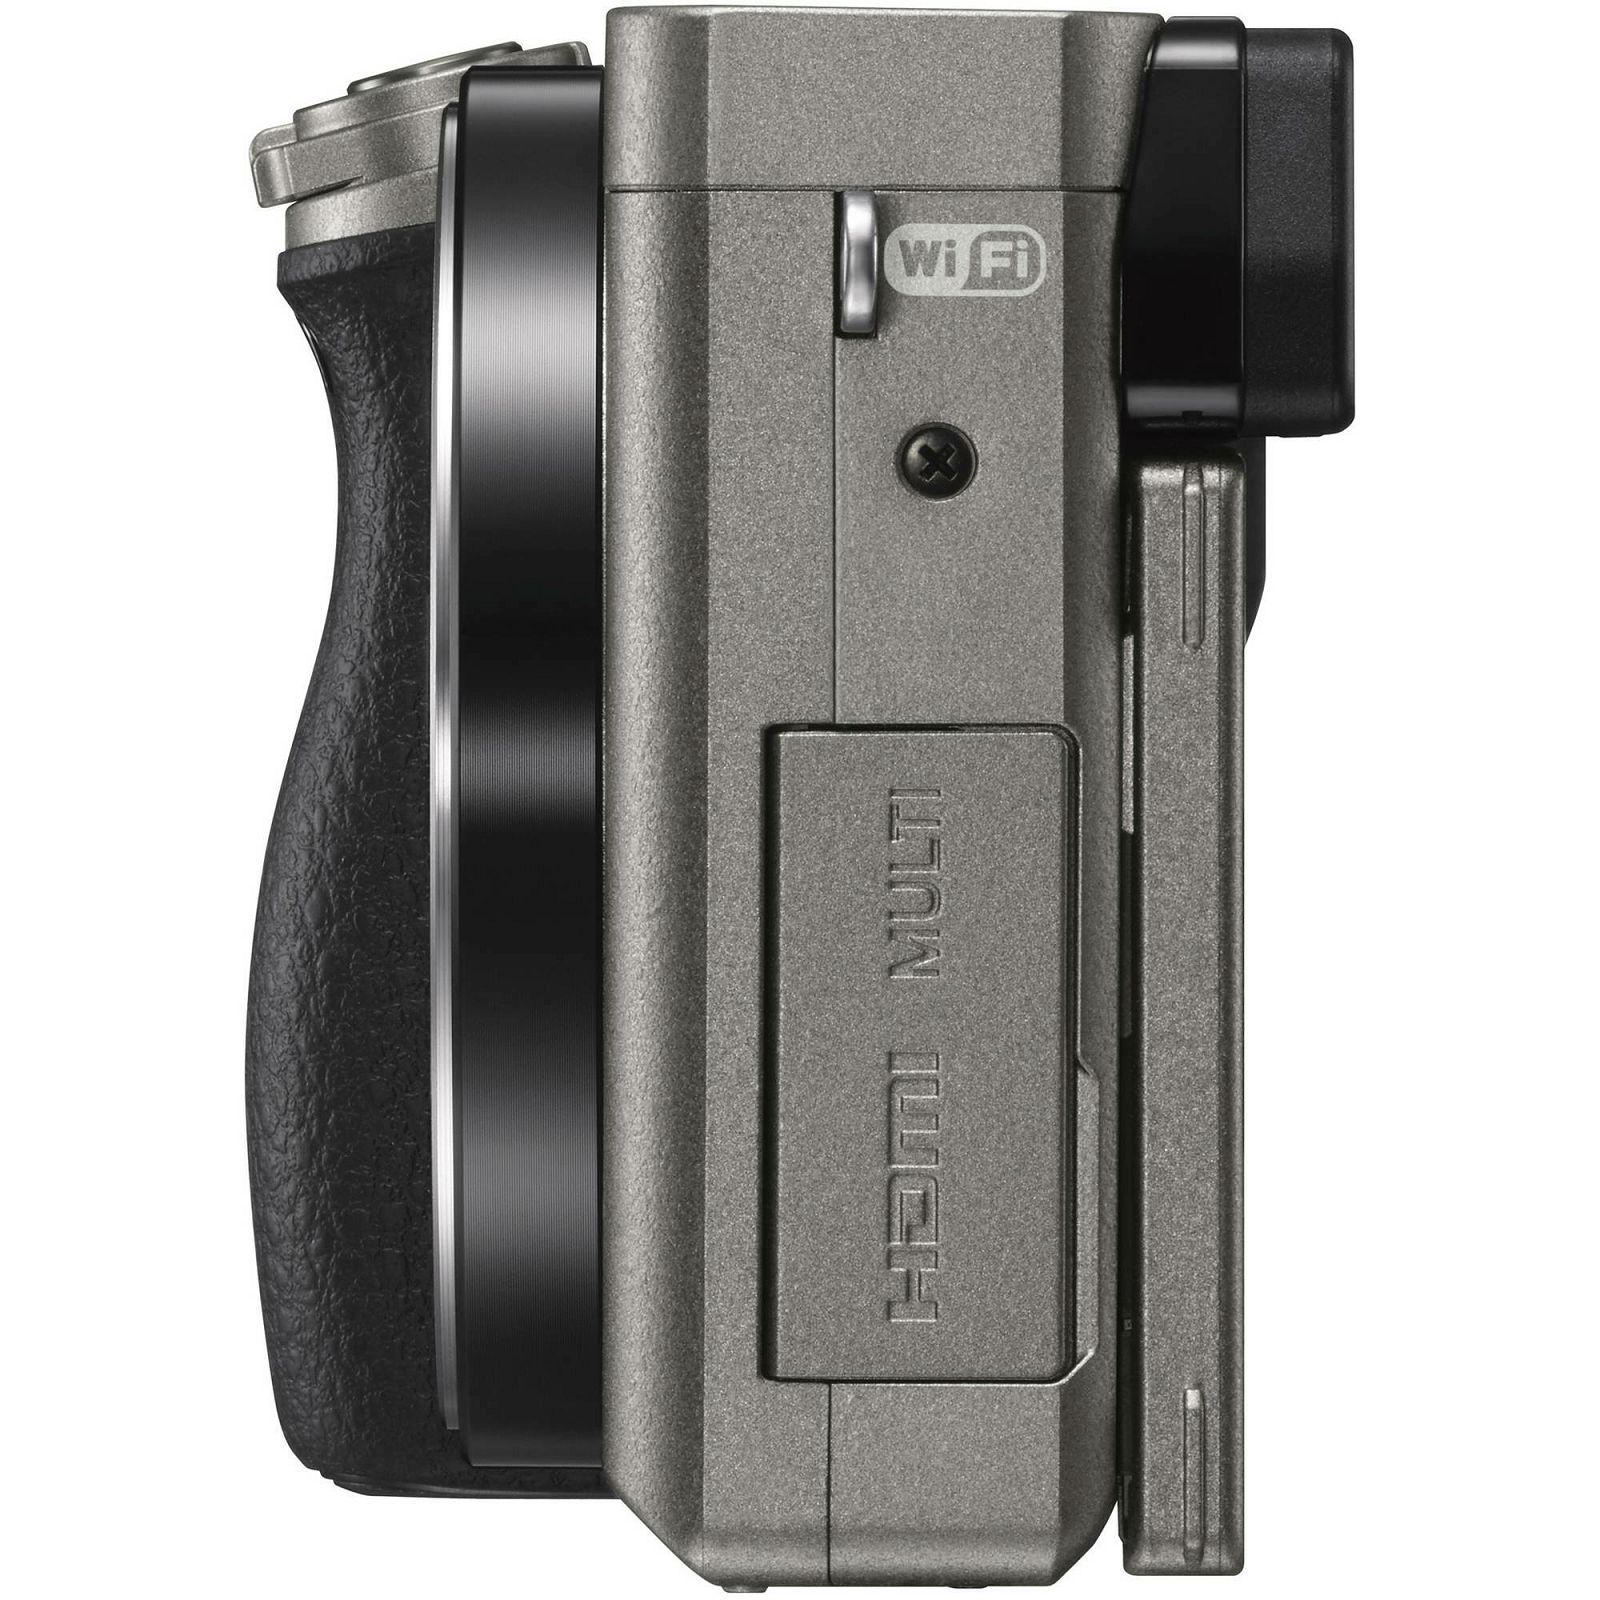 Sony Alpha a6000 + 16-50 f/3.5-5.6 KIT Graphite Mirrorless Digital Camera sivi bezrcalni digitalni fotoaparat i standardni zoom objektiv SEL1650 16-50mm f3.5-5.6 ILCE-6000LH ILCE6000LH (ILCE6000LH.CEC